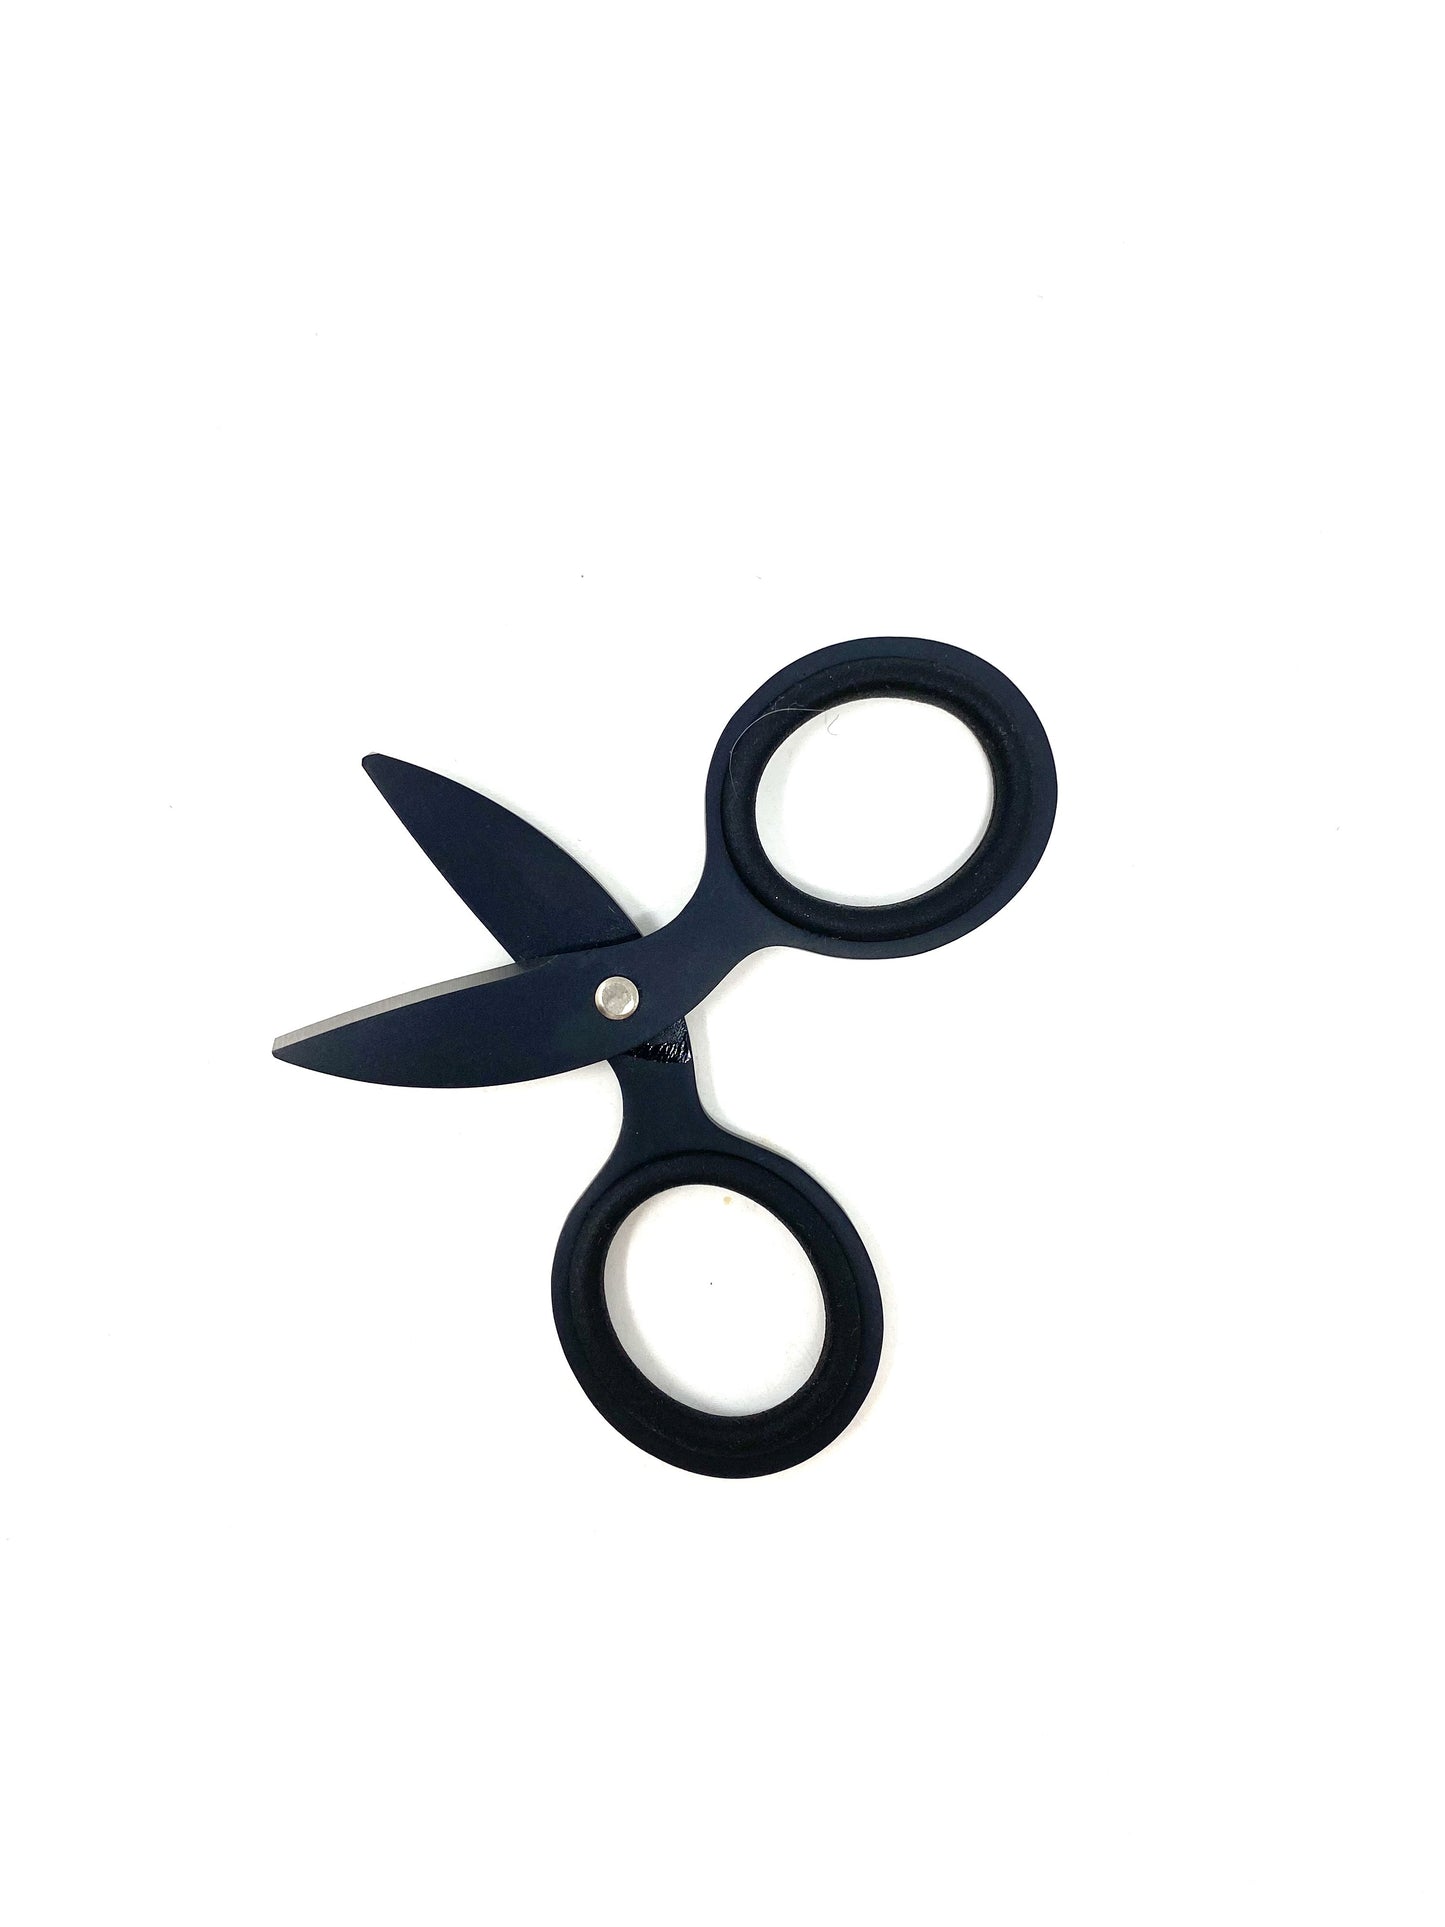 3" Scissors in Black